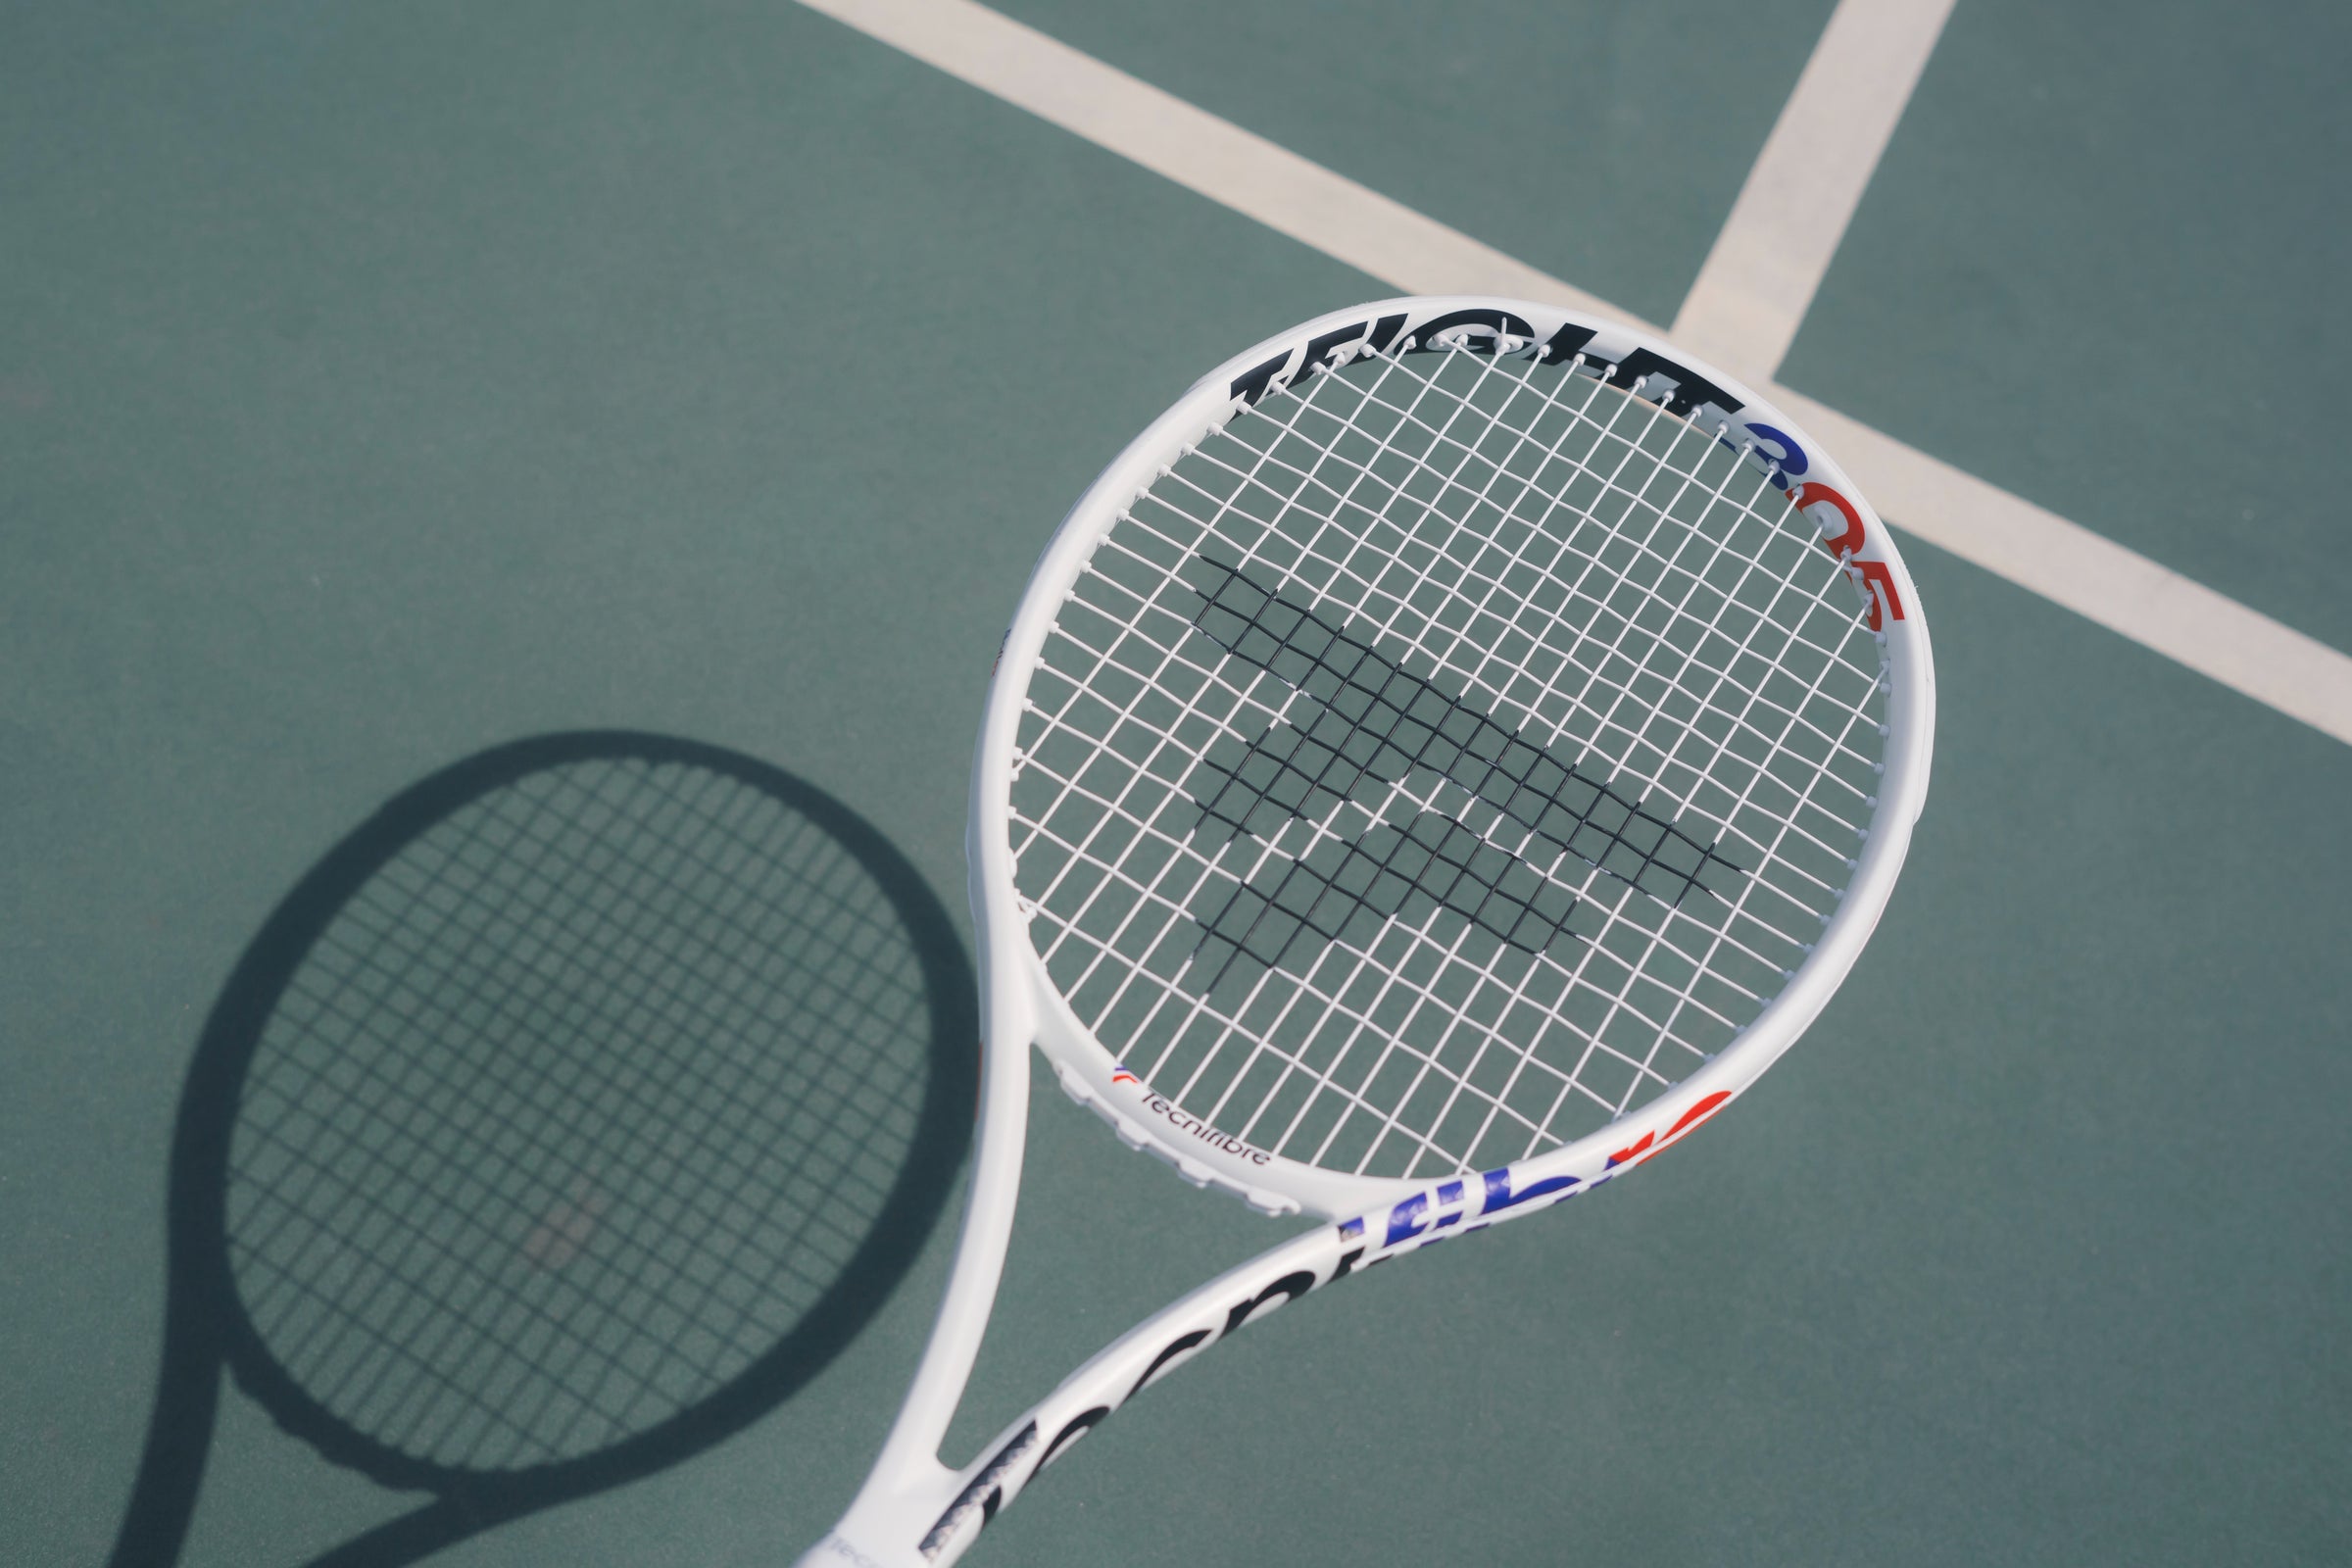 tecnifibre tennis racket